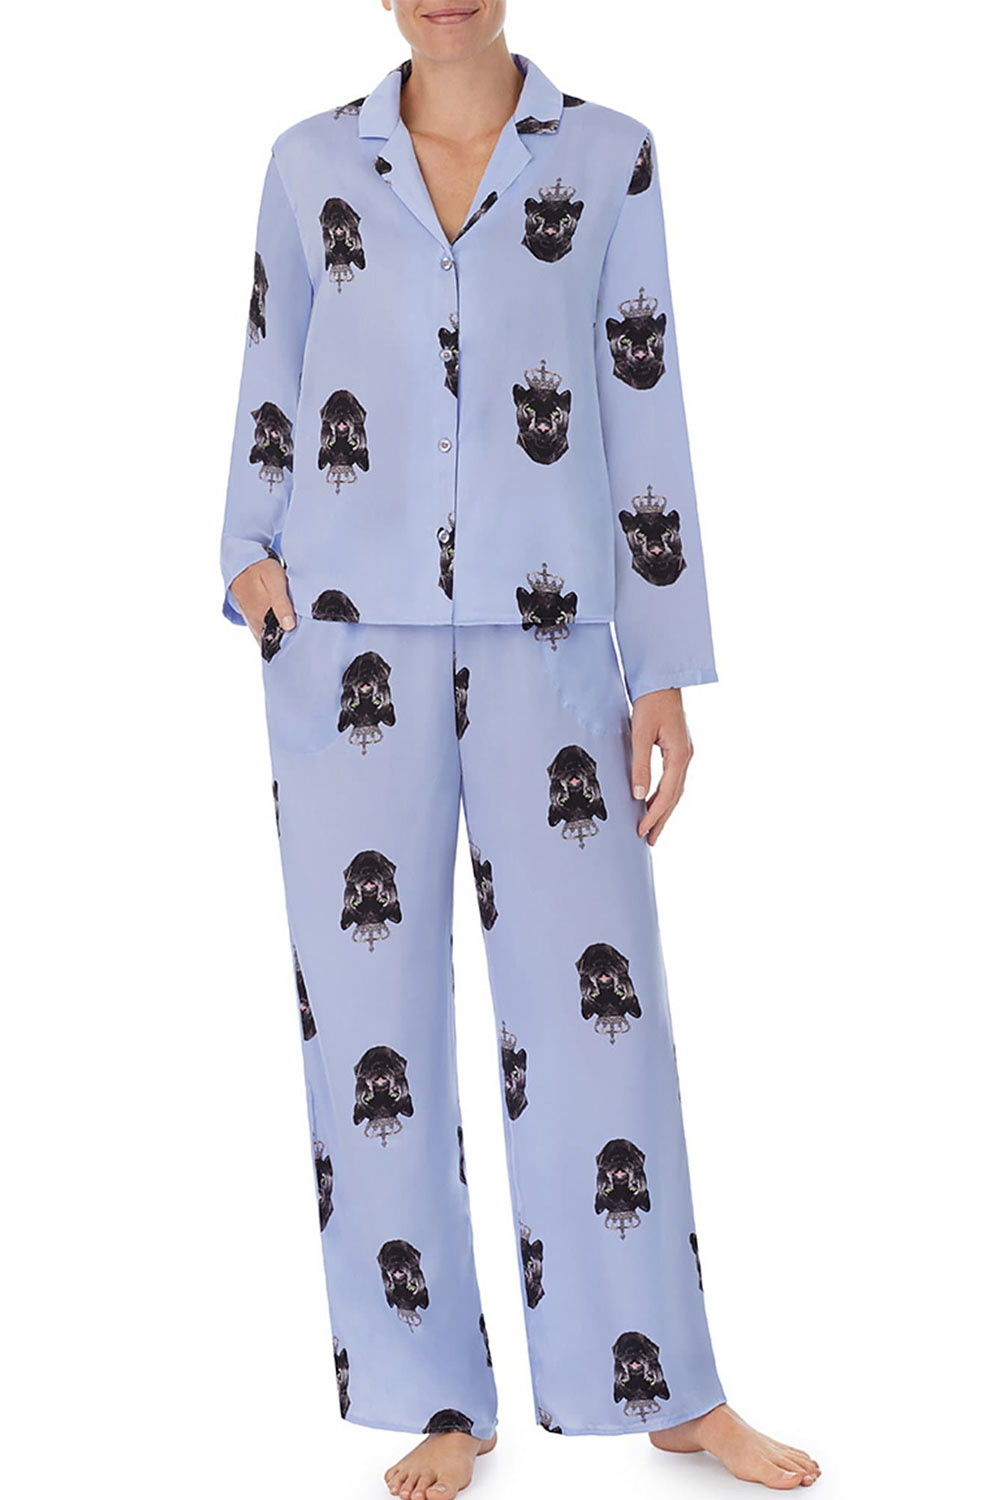 NWT. Women's Size L Shady Lady Pajama Top